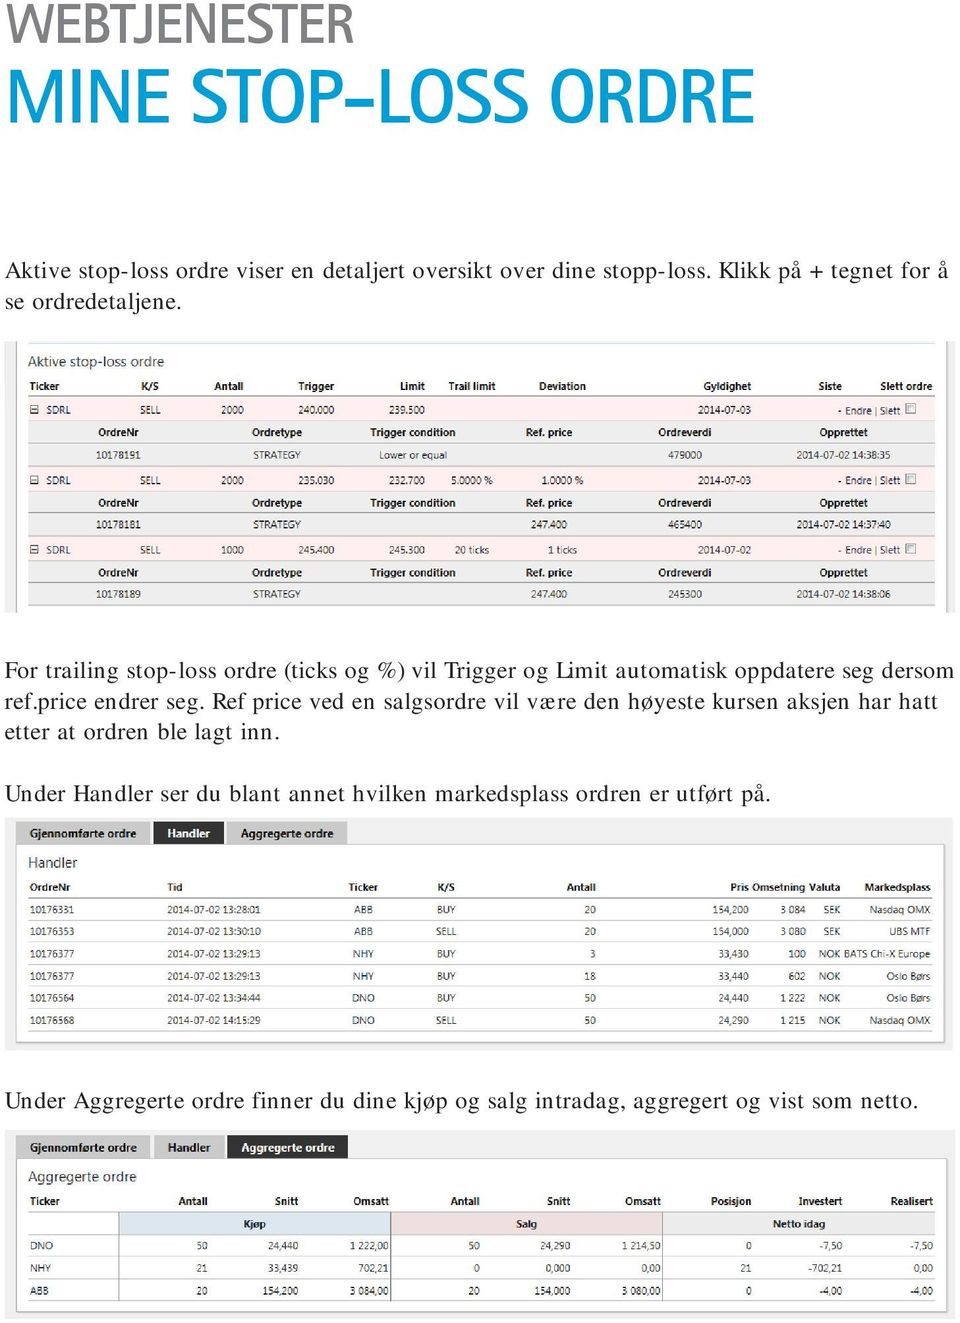 For trailing stop-loss ordre (ticks og %) vil Trigger og Limit automatisk oppdatere seg dersom ref.price endrer seg.